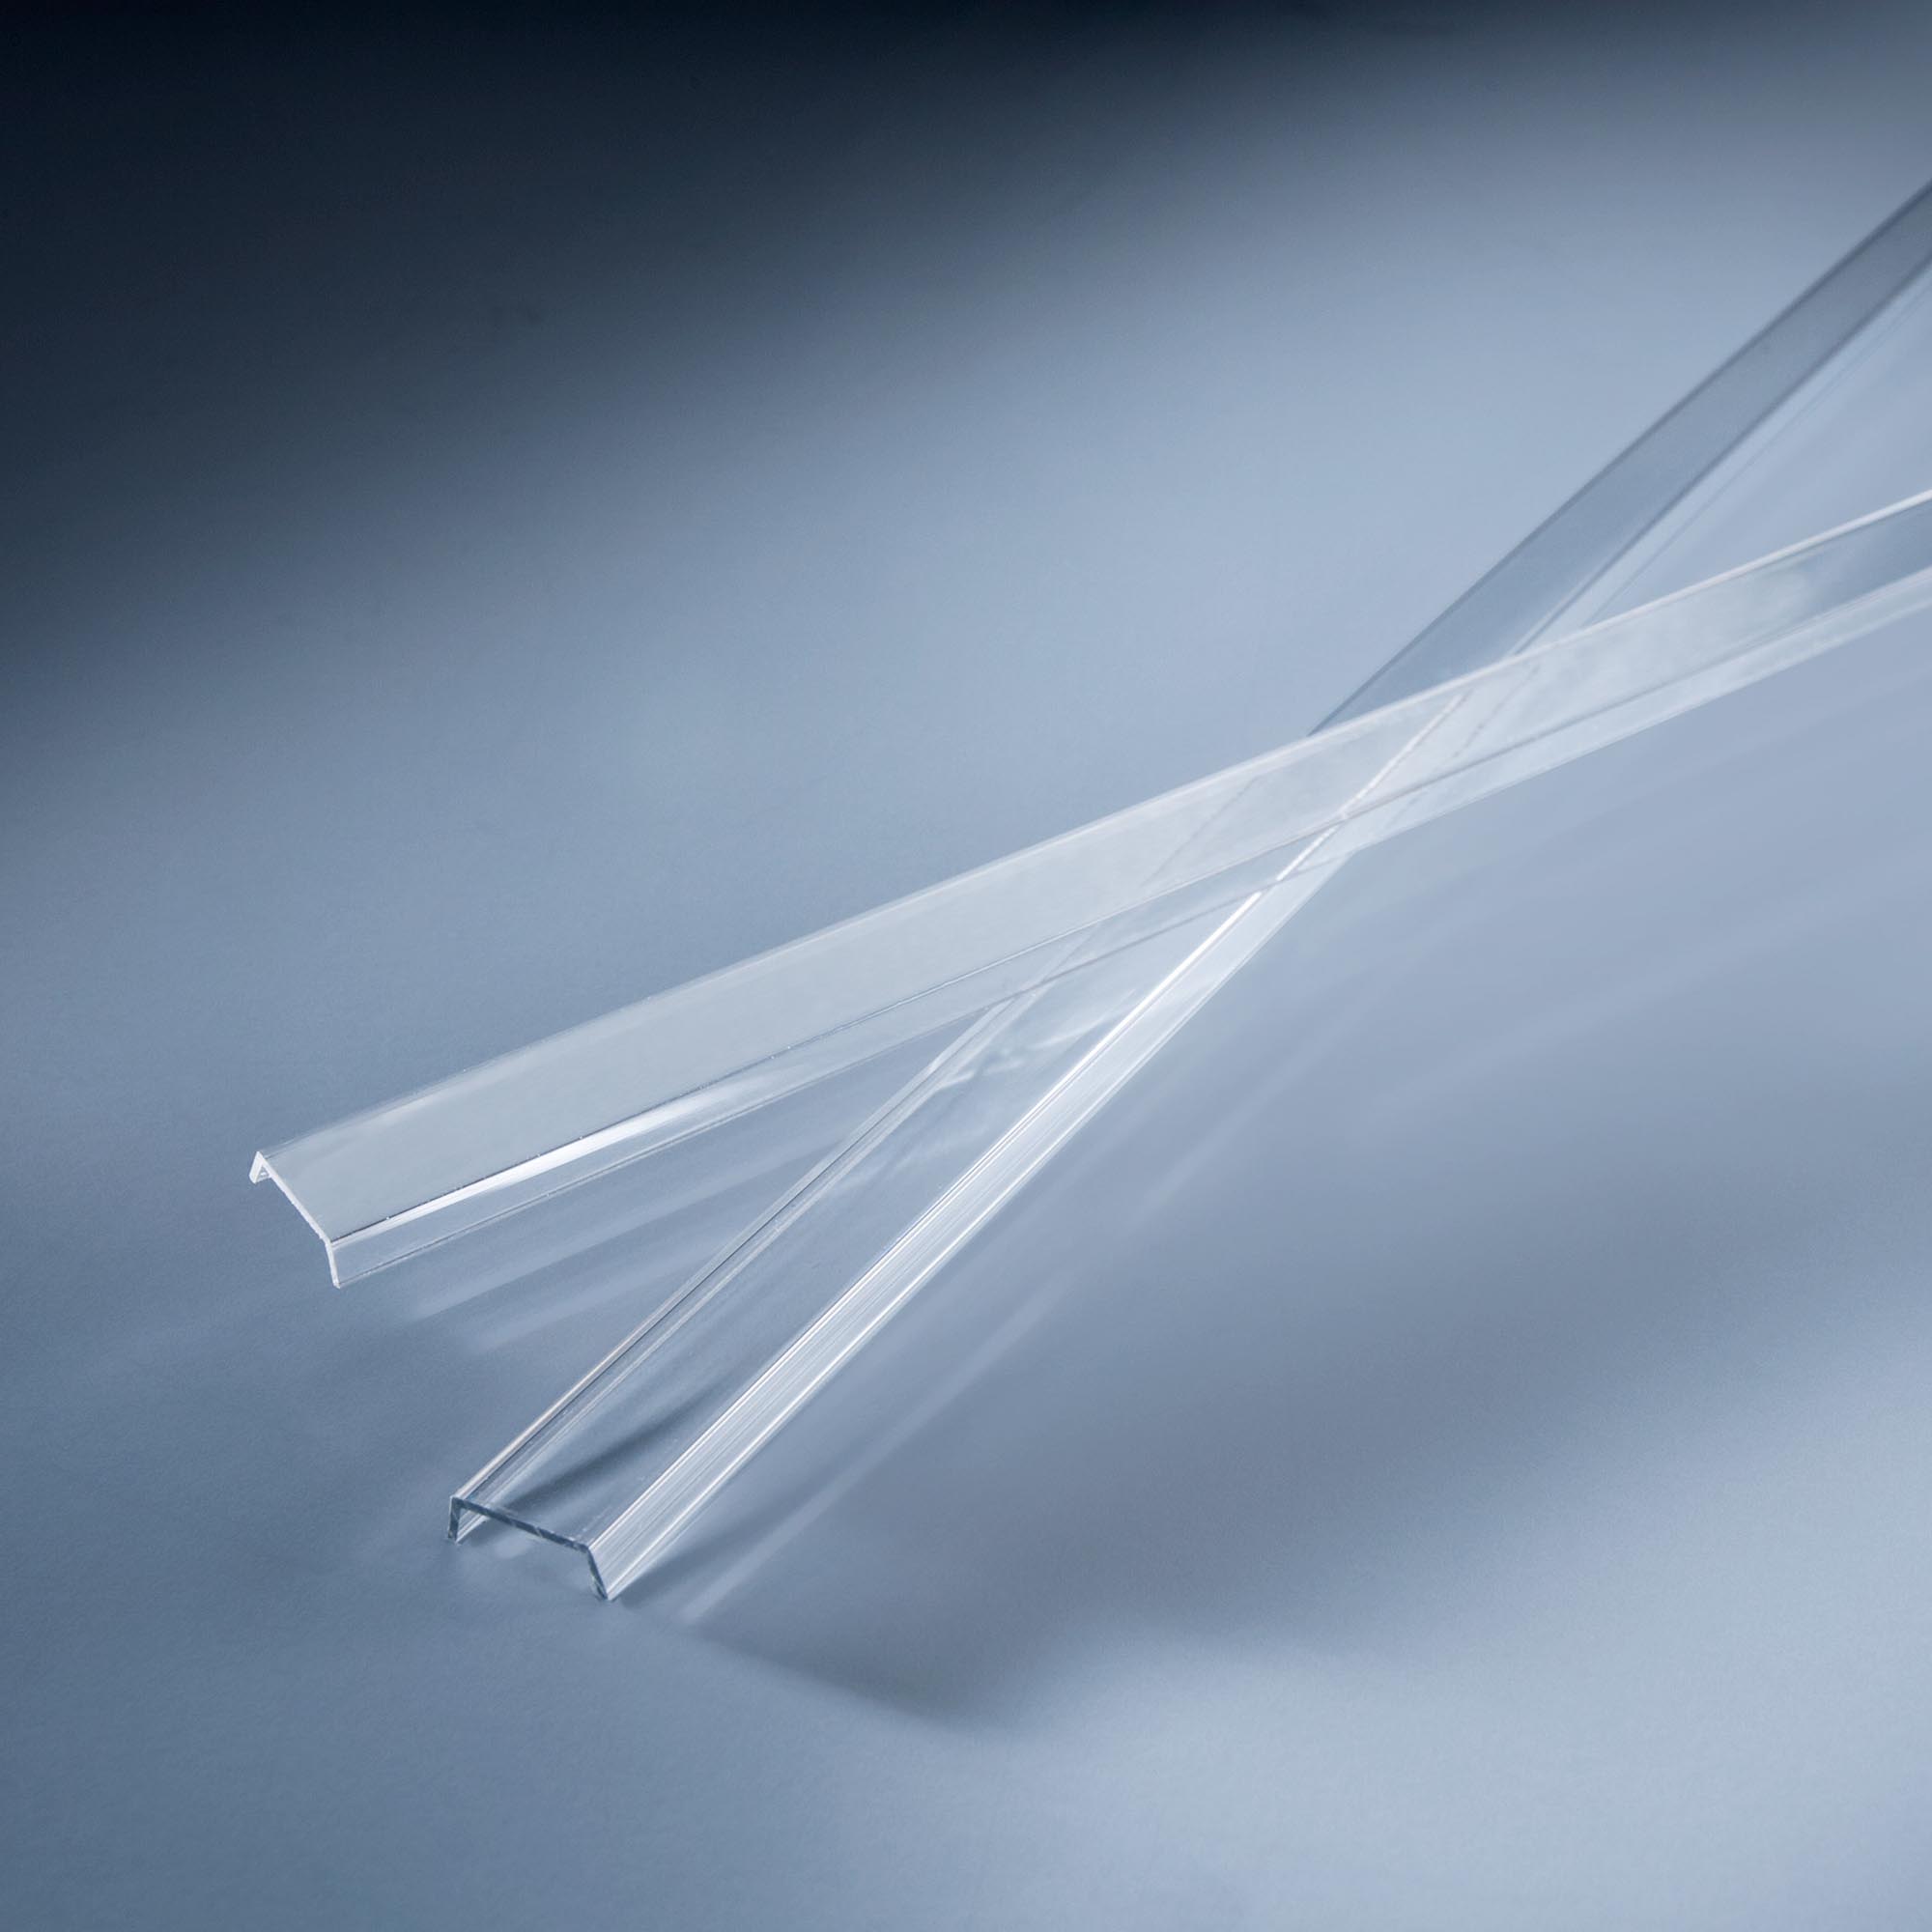 Geam de Plastic Transparent lungime 1009mm pentru profilele Aluflex de 102cm ce folosesc capace la capate